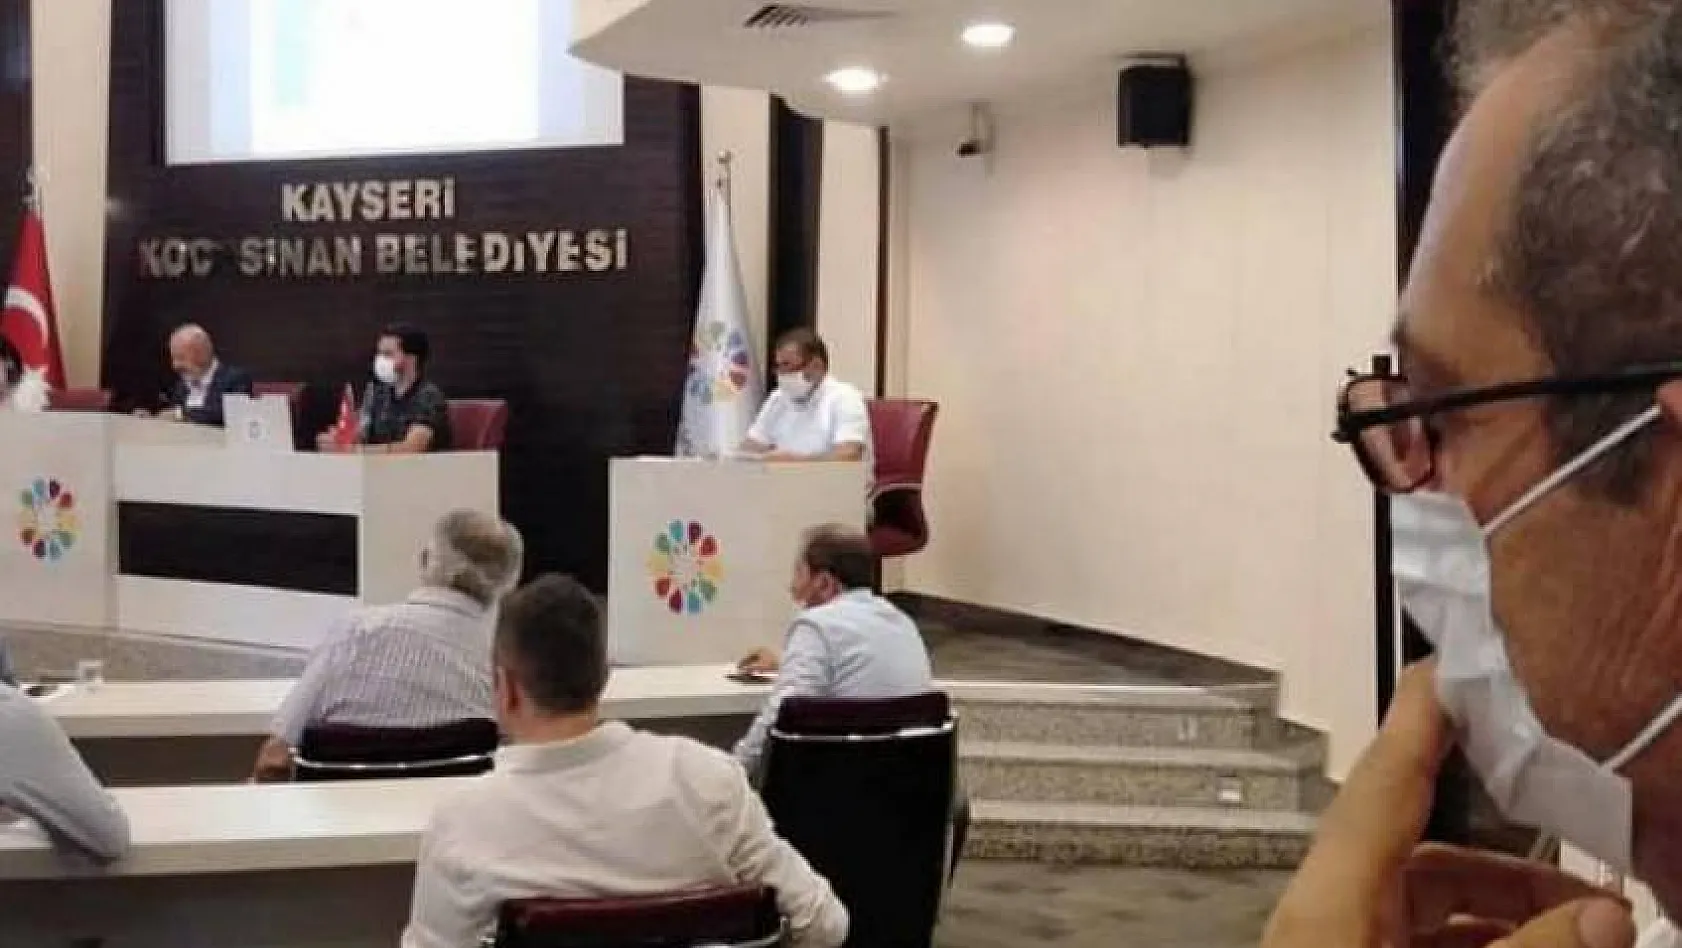 O ilçe başkanından belediye meclisleri ile ilgili şok açıklama: Kayseri'nin geleceği mirasyedi gibi satılıyor